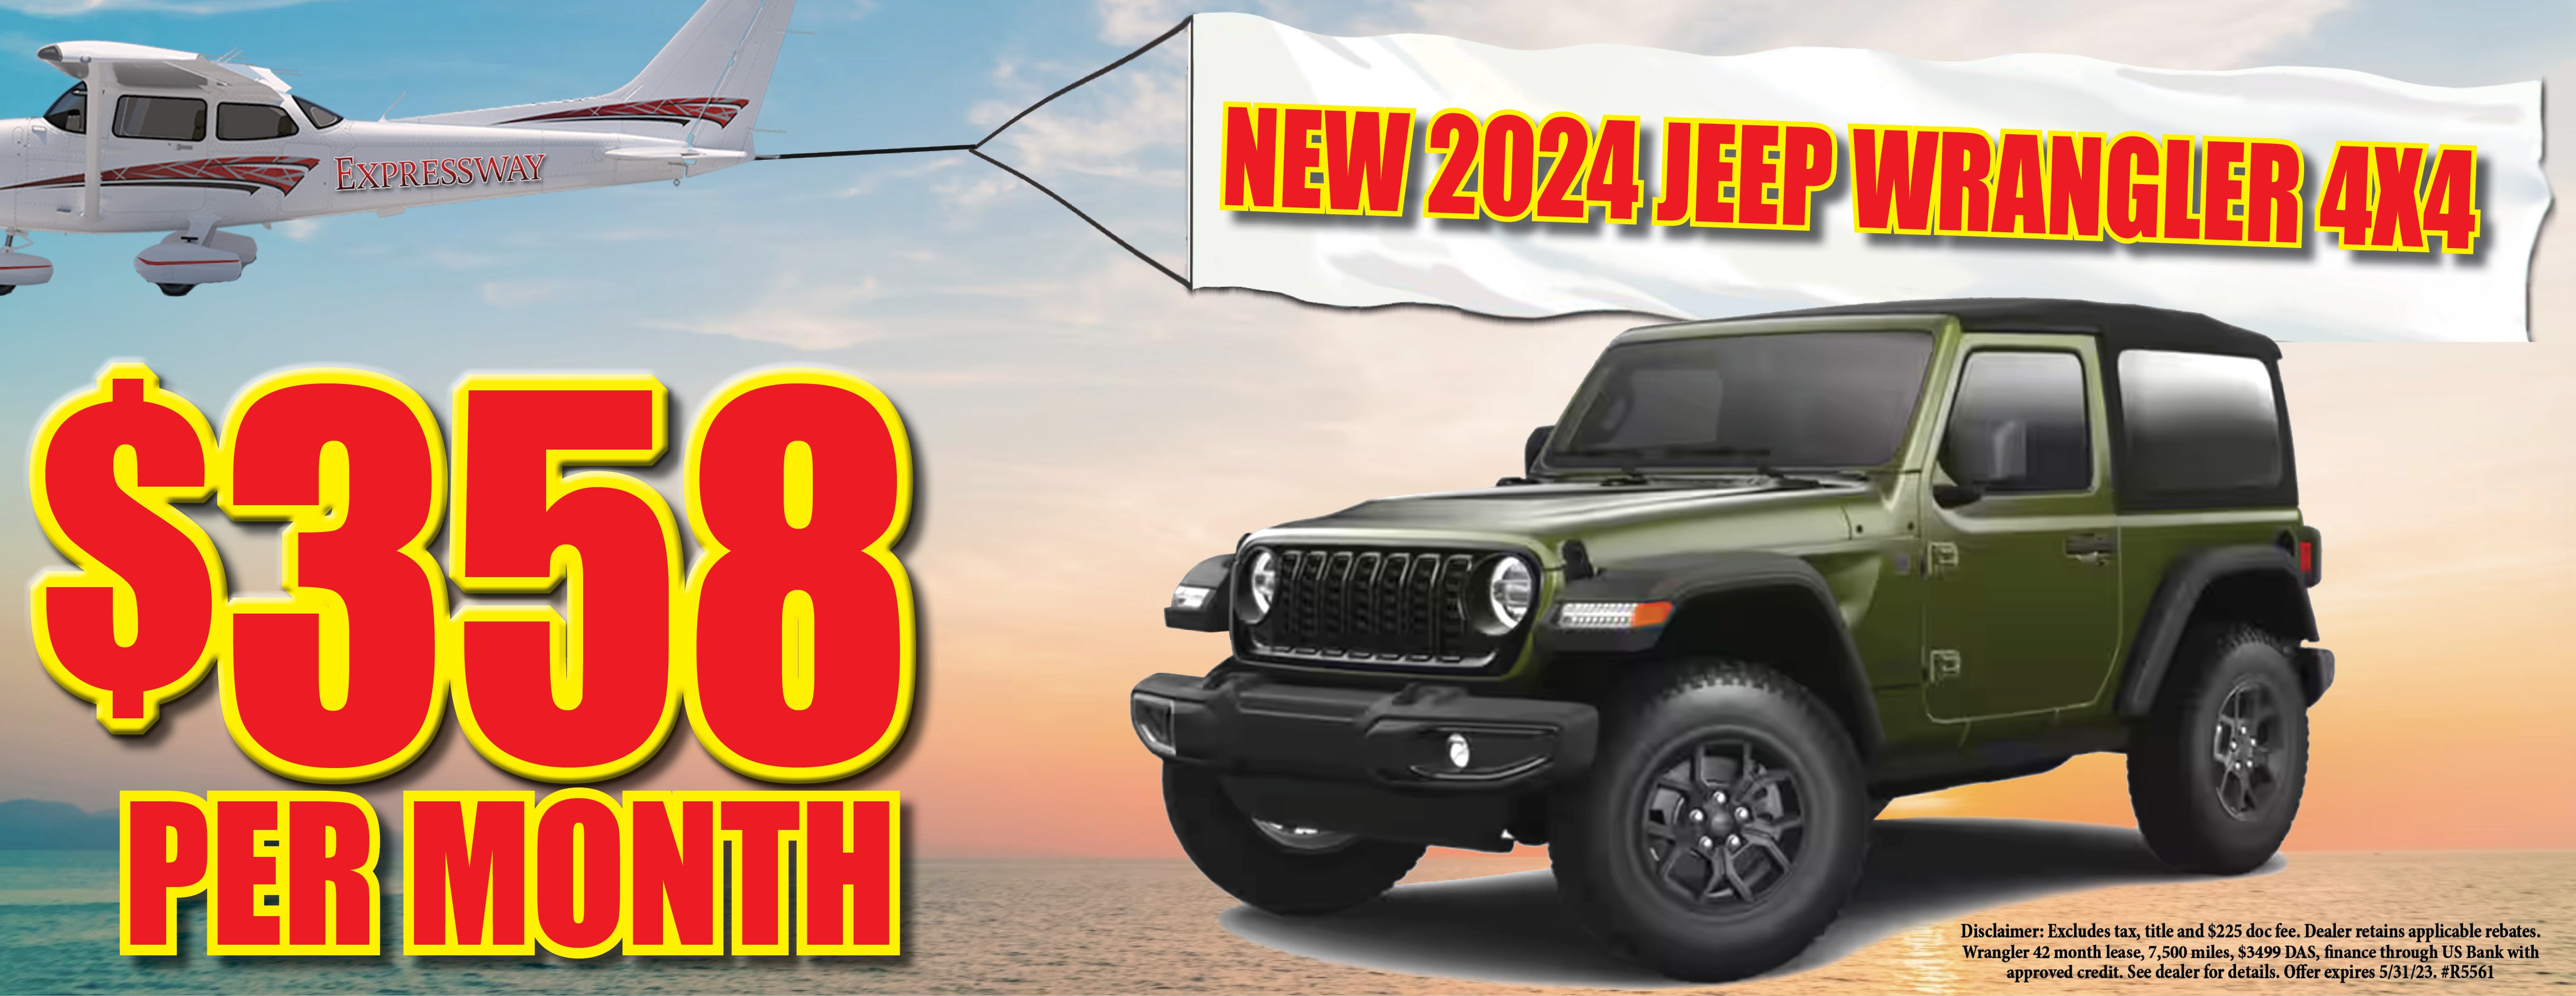 2024 Jeep Wrangler 4x4